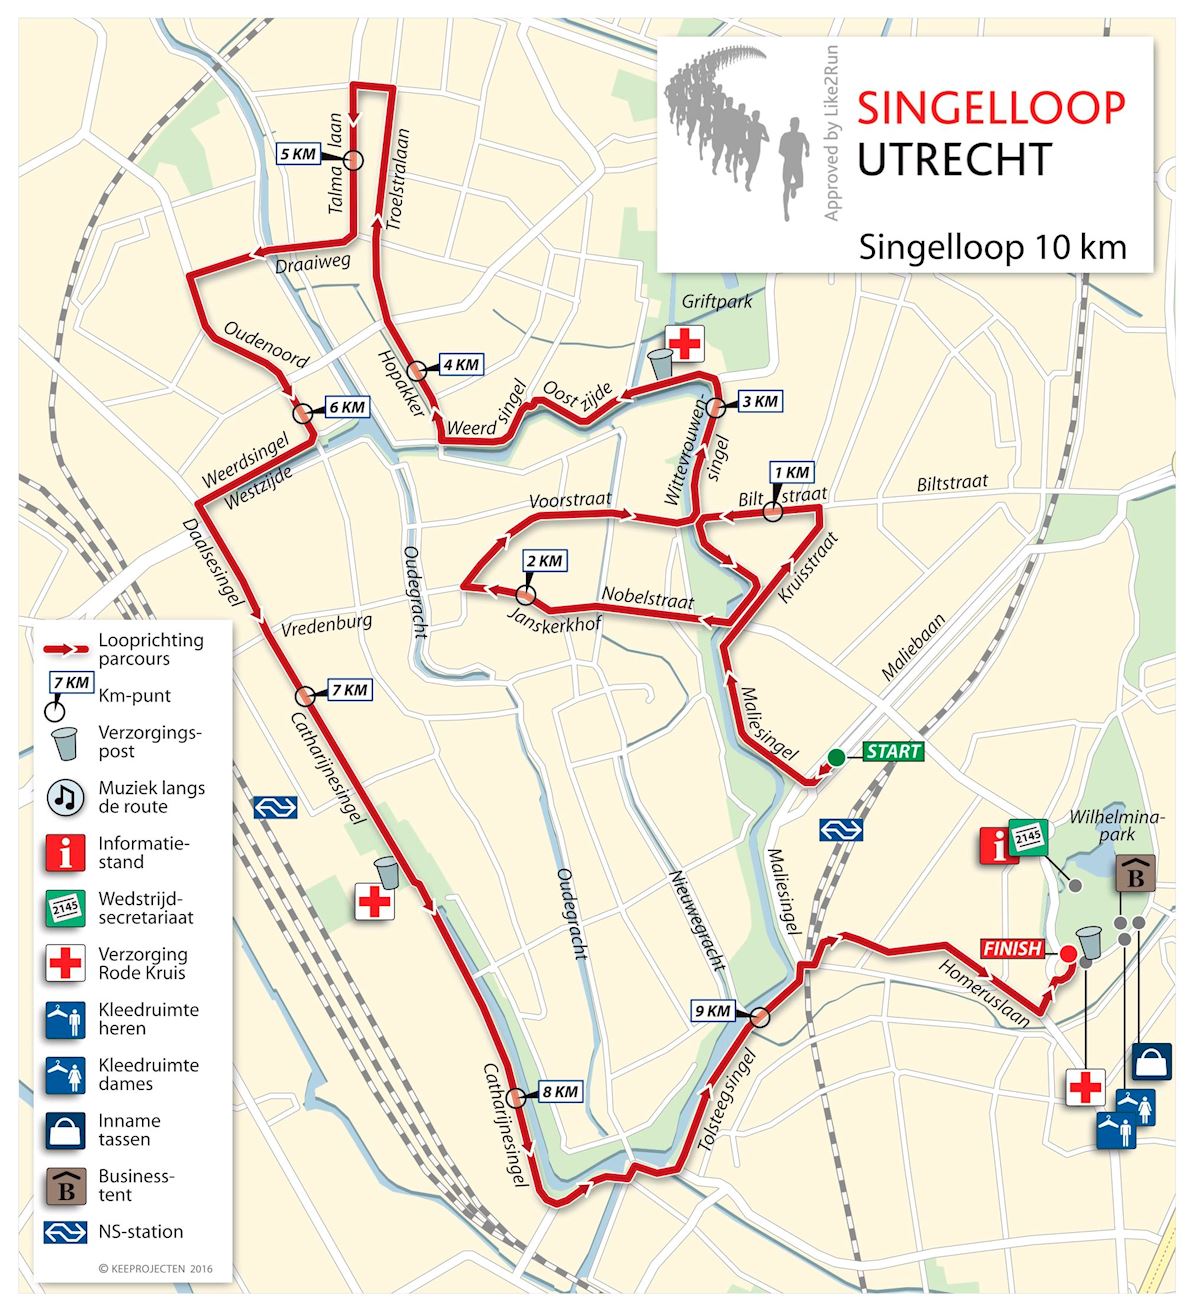 Singelloop Utrecht Mappa del percorso